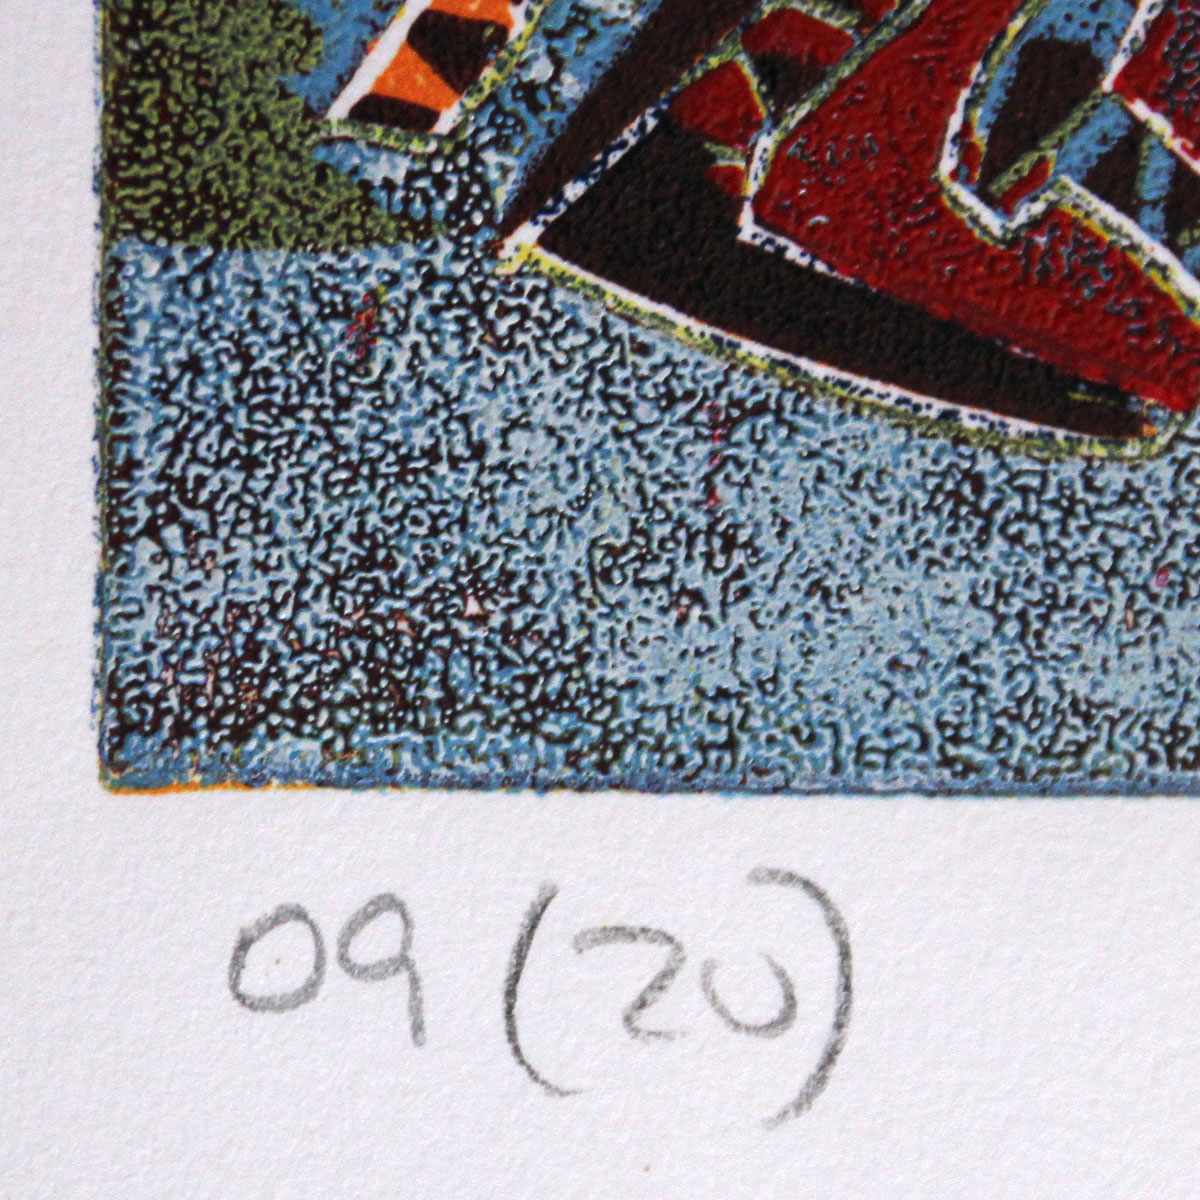 Grafik, mehrfarbiger Linoldruck von Frank-Ole Haake: "Kampf der Dämonen 09 (20)"